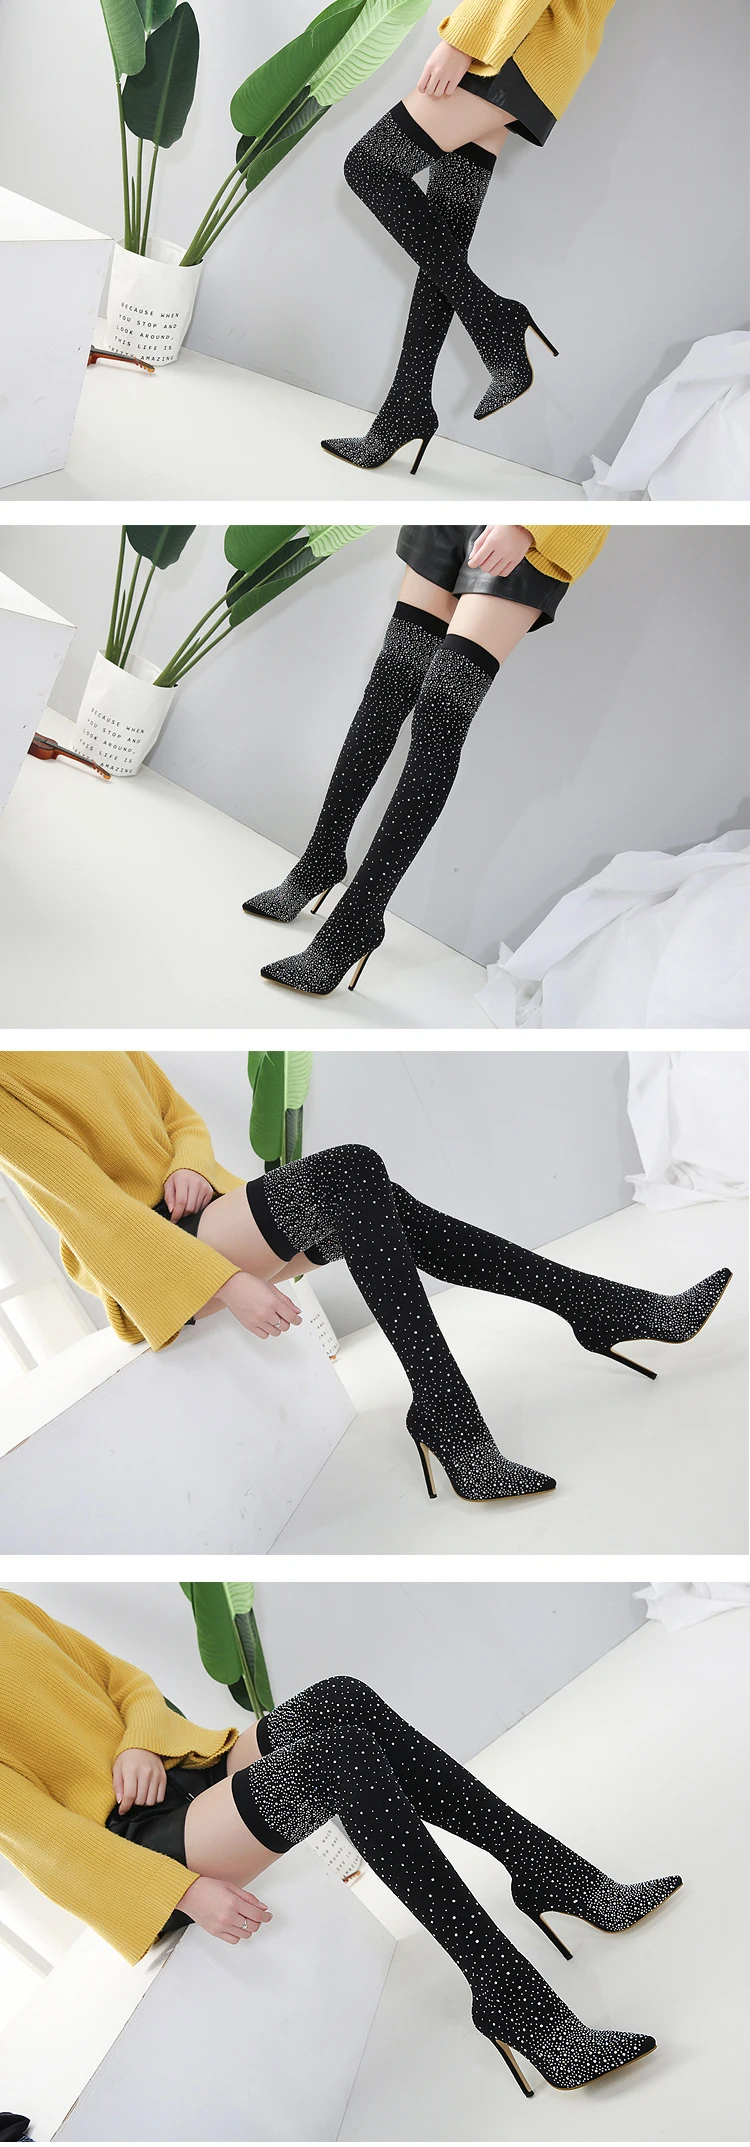 Eilyken/ г. Модные Подиумные ботинки со стразами, стелька из эластичной ткани женские ботфорты с острым носком на высоком каблуке